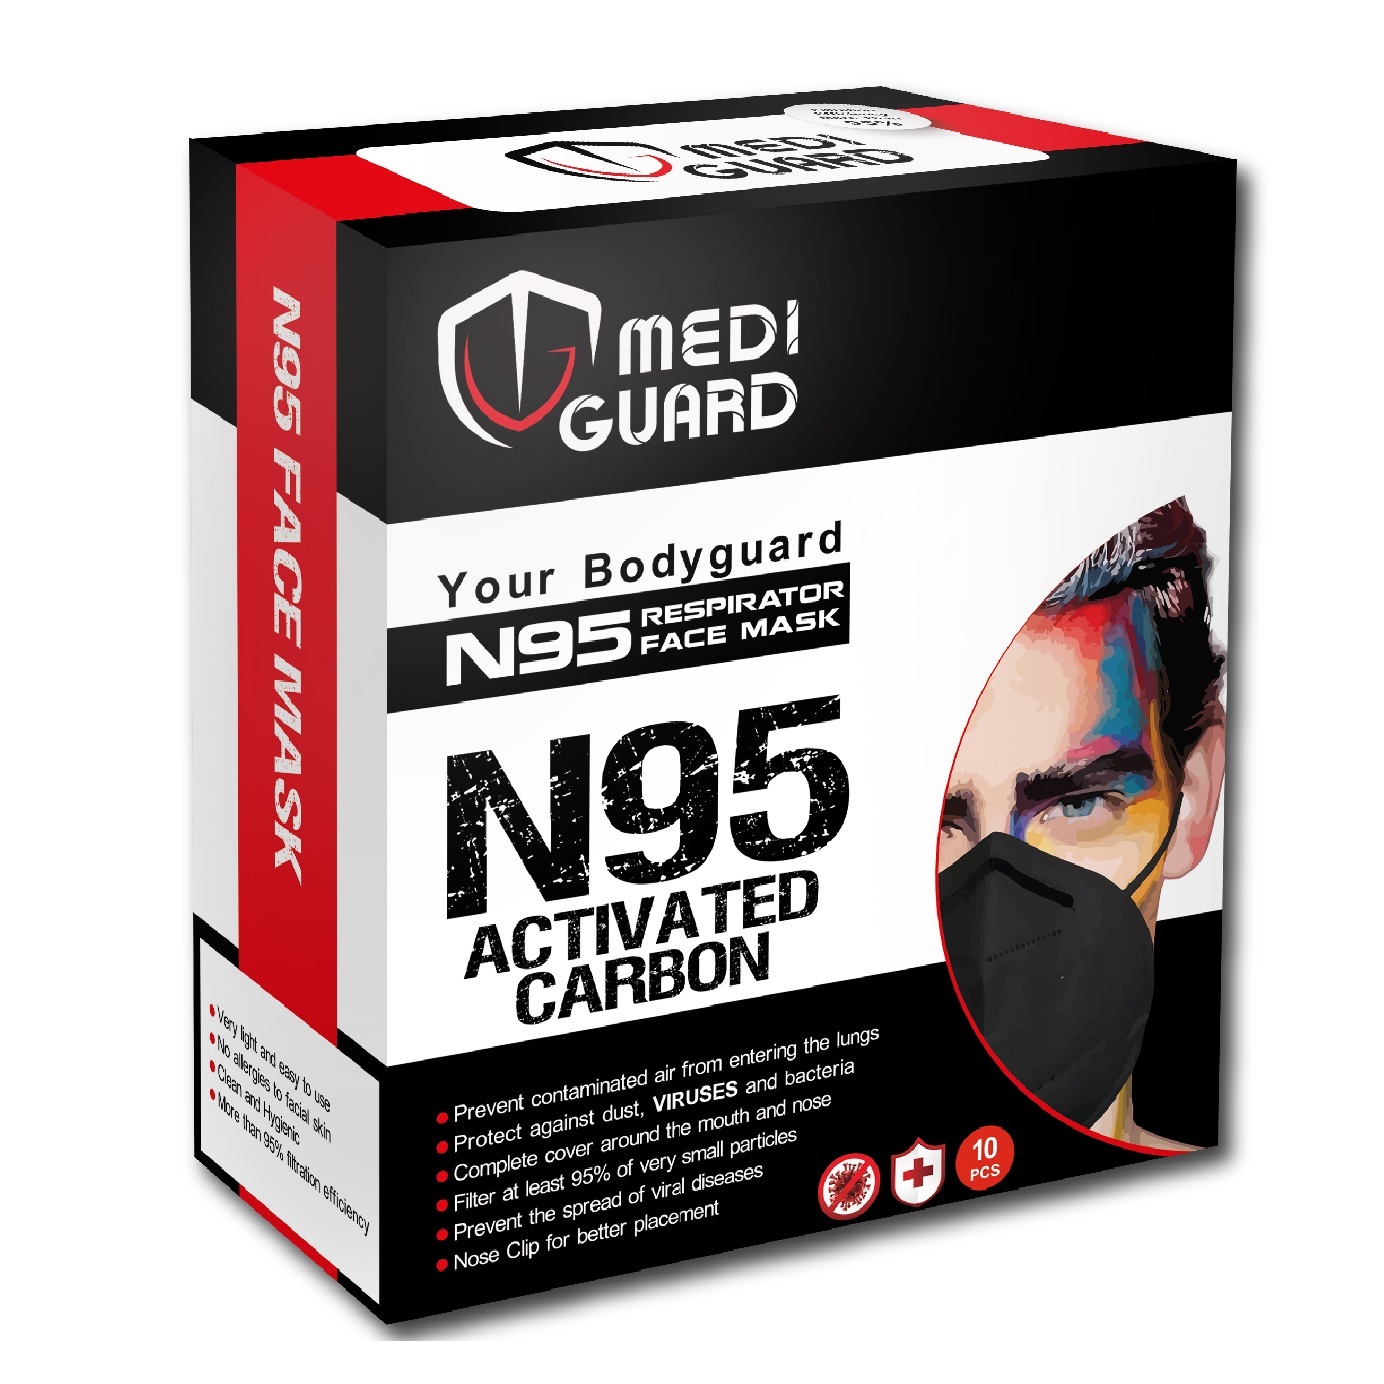 ماسک تنفسی مدی گارد مدل N95 کربن اکتیو بسته 10 عددی